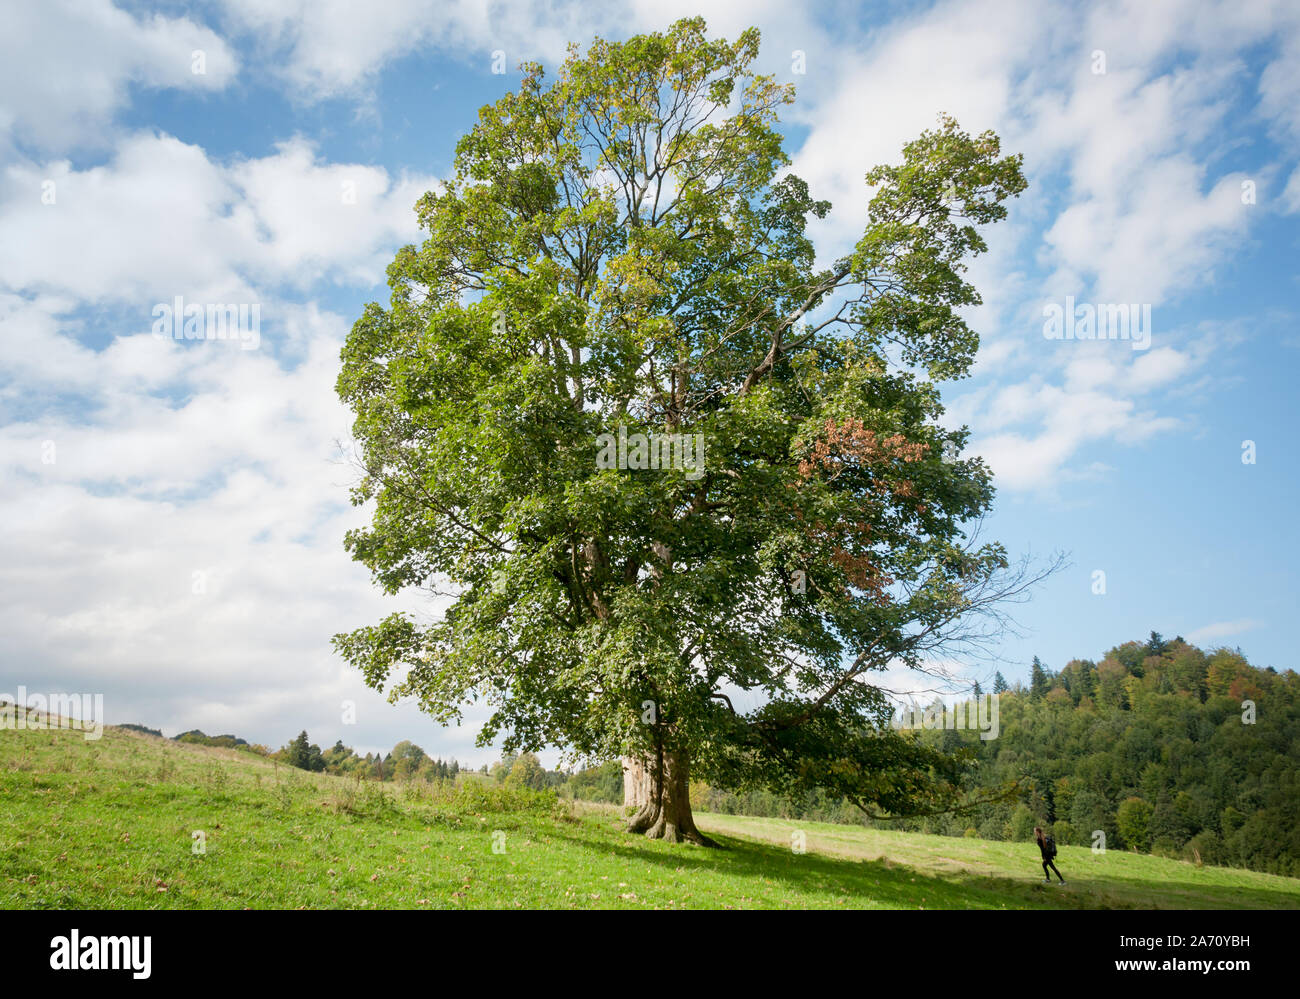 Un grand arbre par rapport à un petit homme. Nature contre l'humanité. Un touriste se dirigeant vers un à feuilles caduques sur une colline verte Photo Stock - Alamy